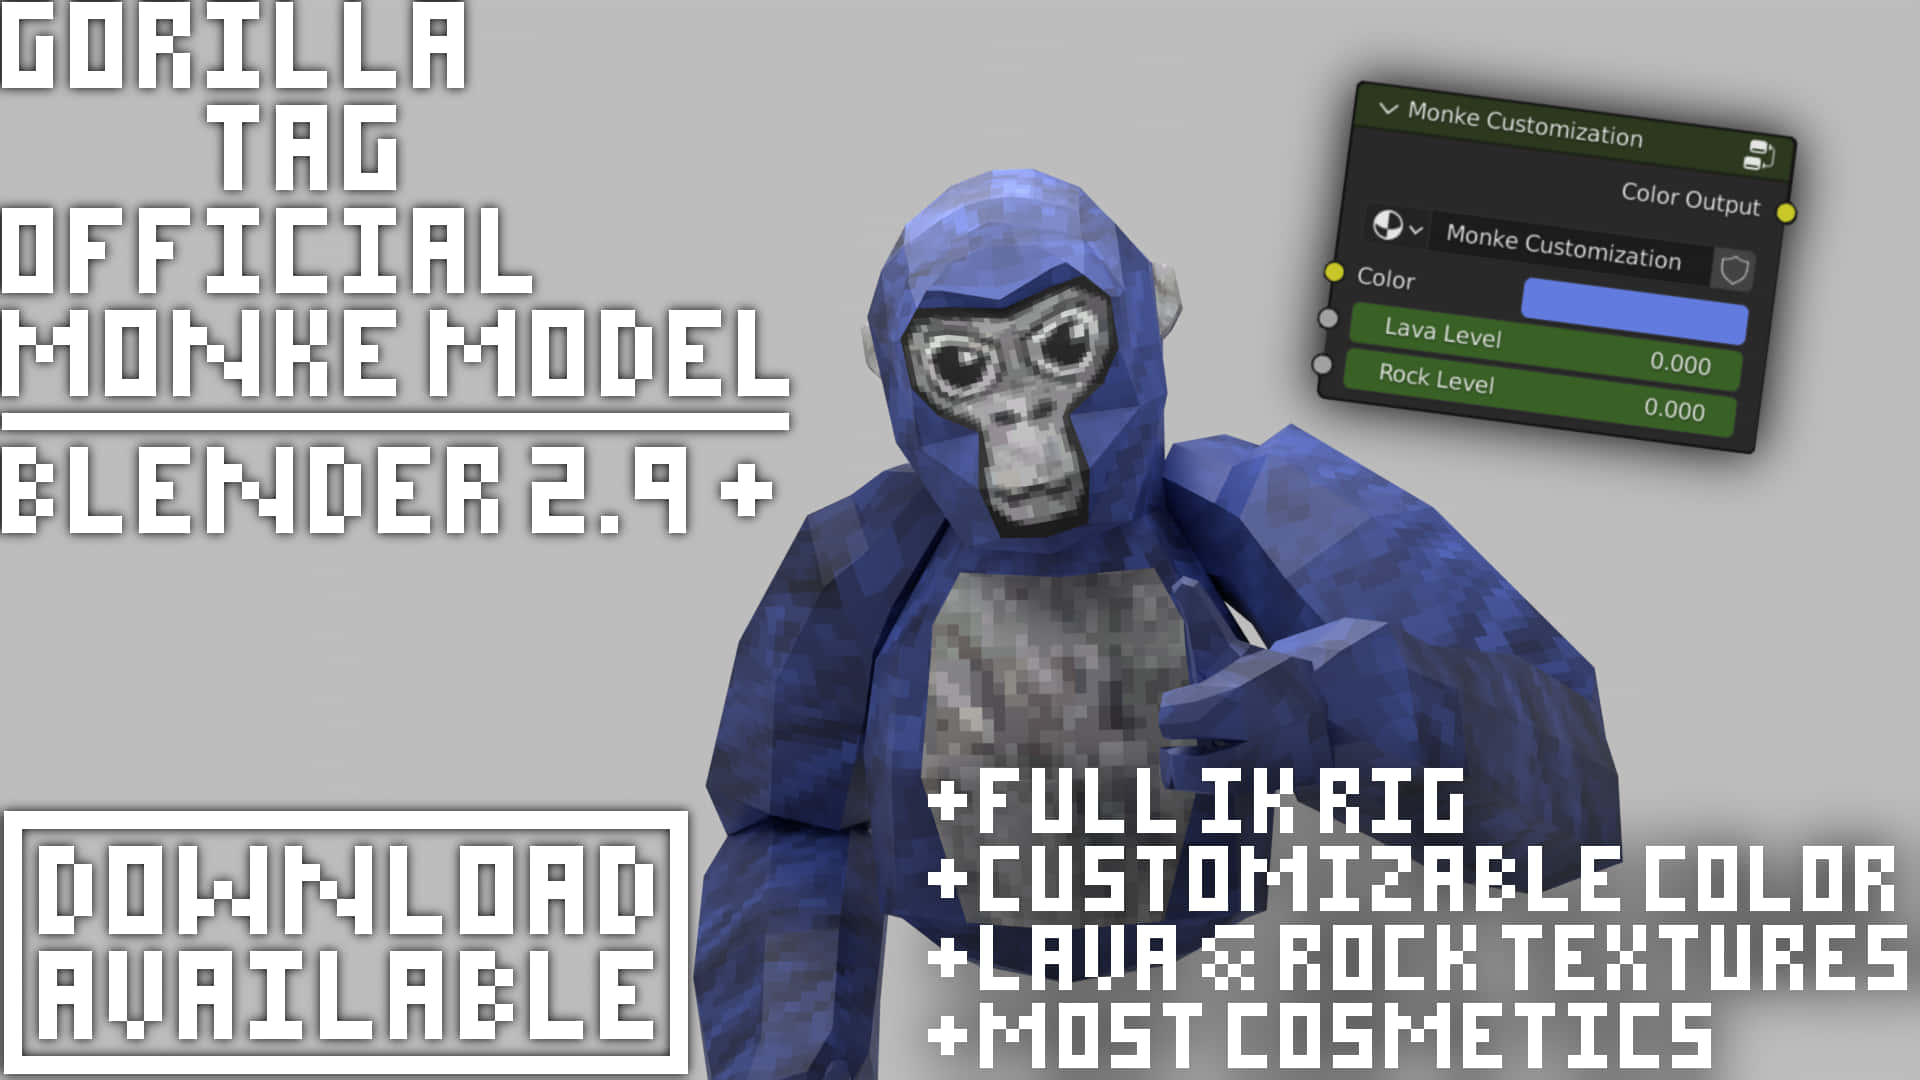 Gorilla Tag Official Model - Elegancer Model 9 Background